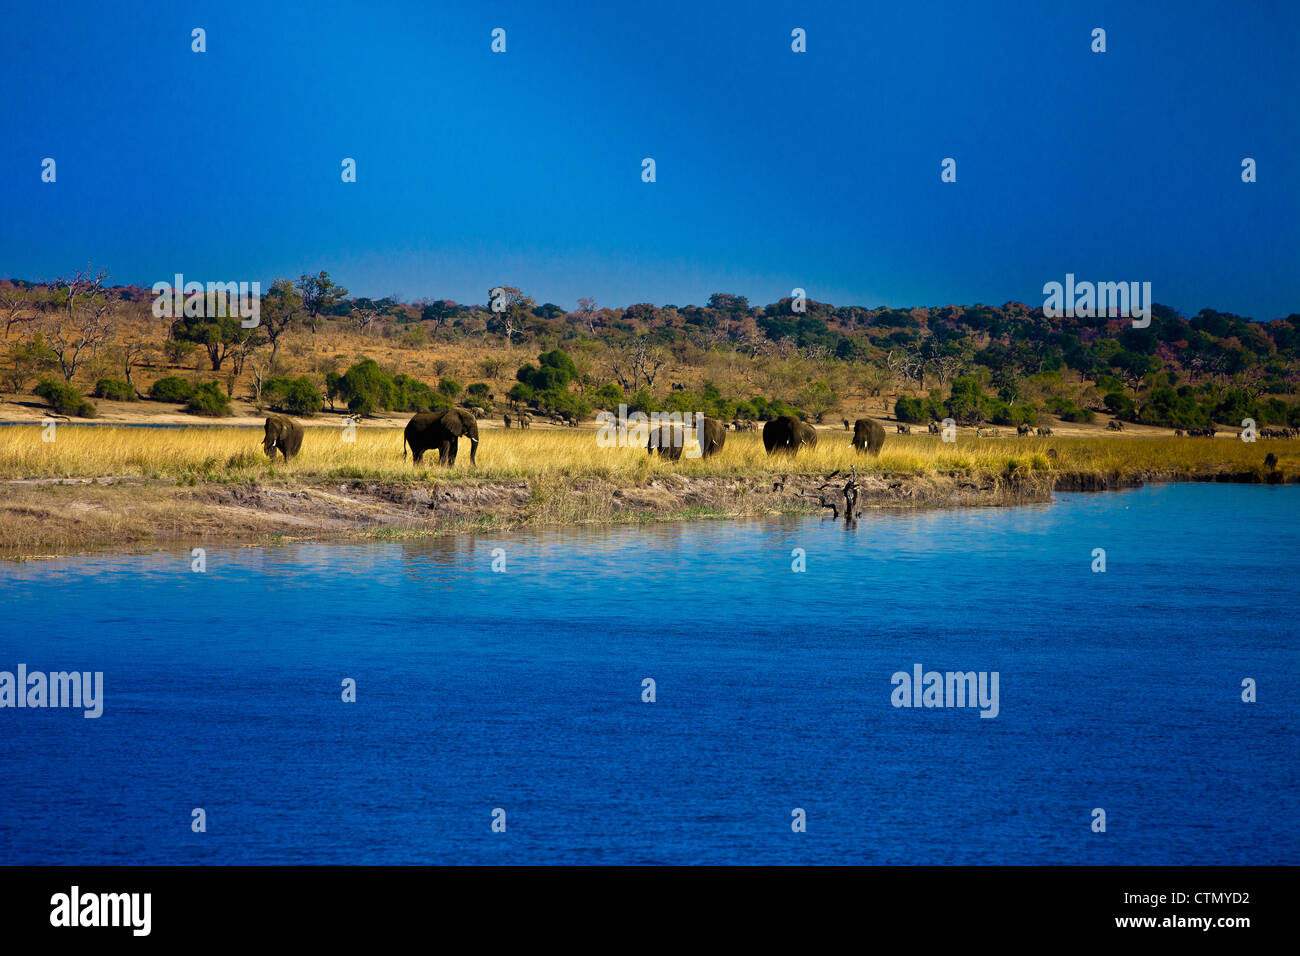 Elephants by Chobe river, Chobe National Park, Botswana Stock Photo